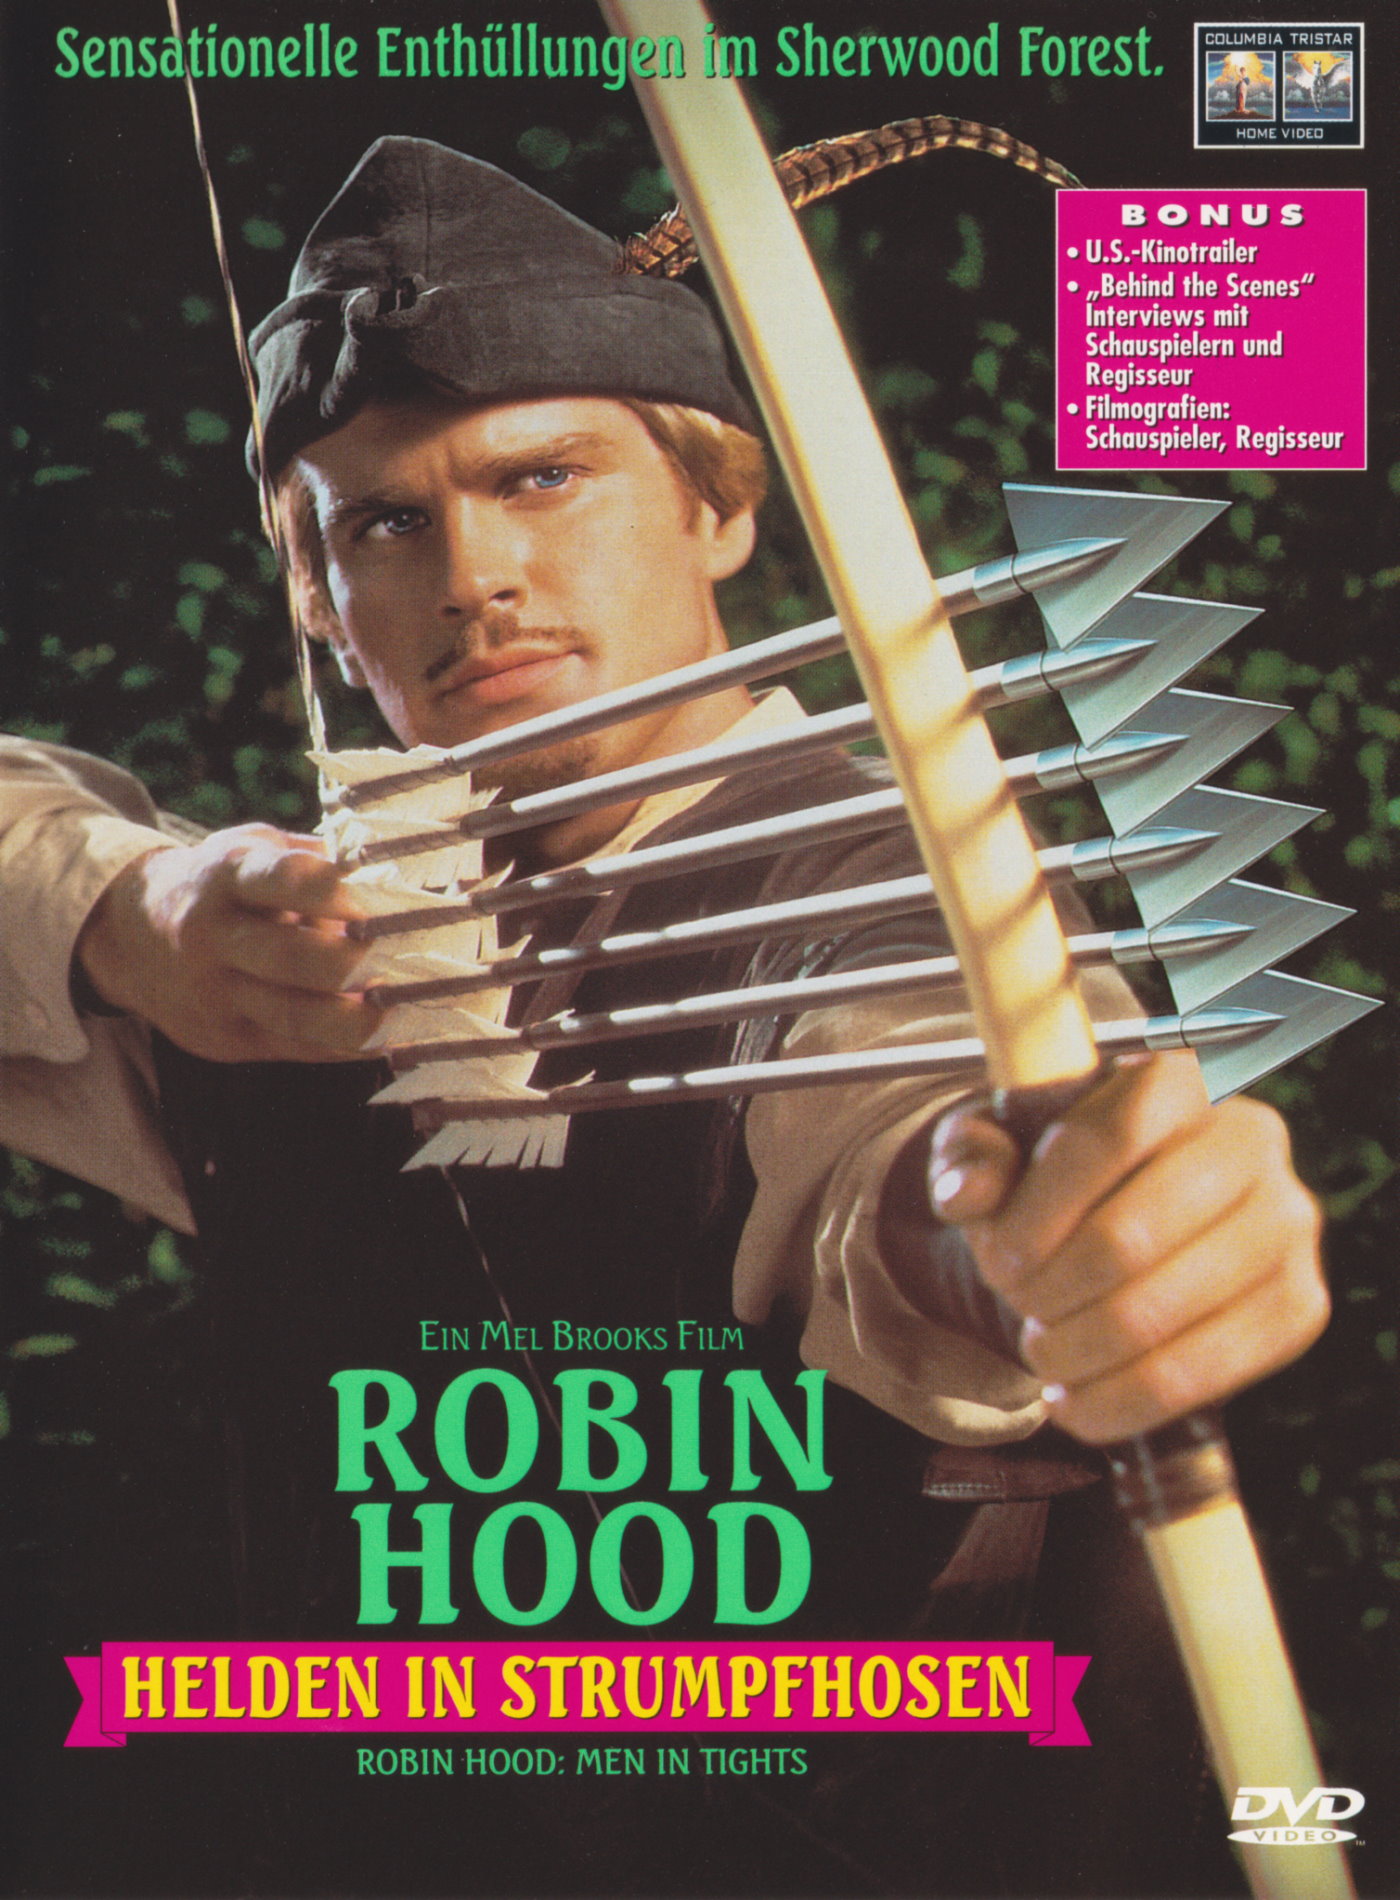 Cover - Robin Hood - Helden in Strumpfhosen.jpg